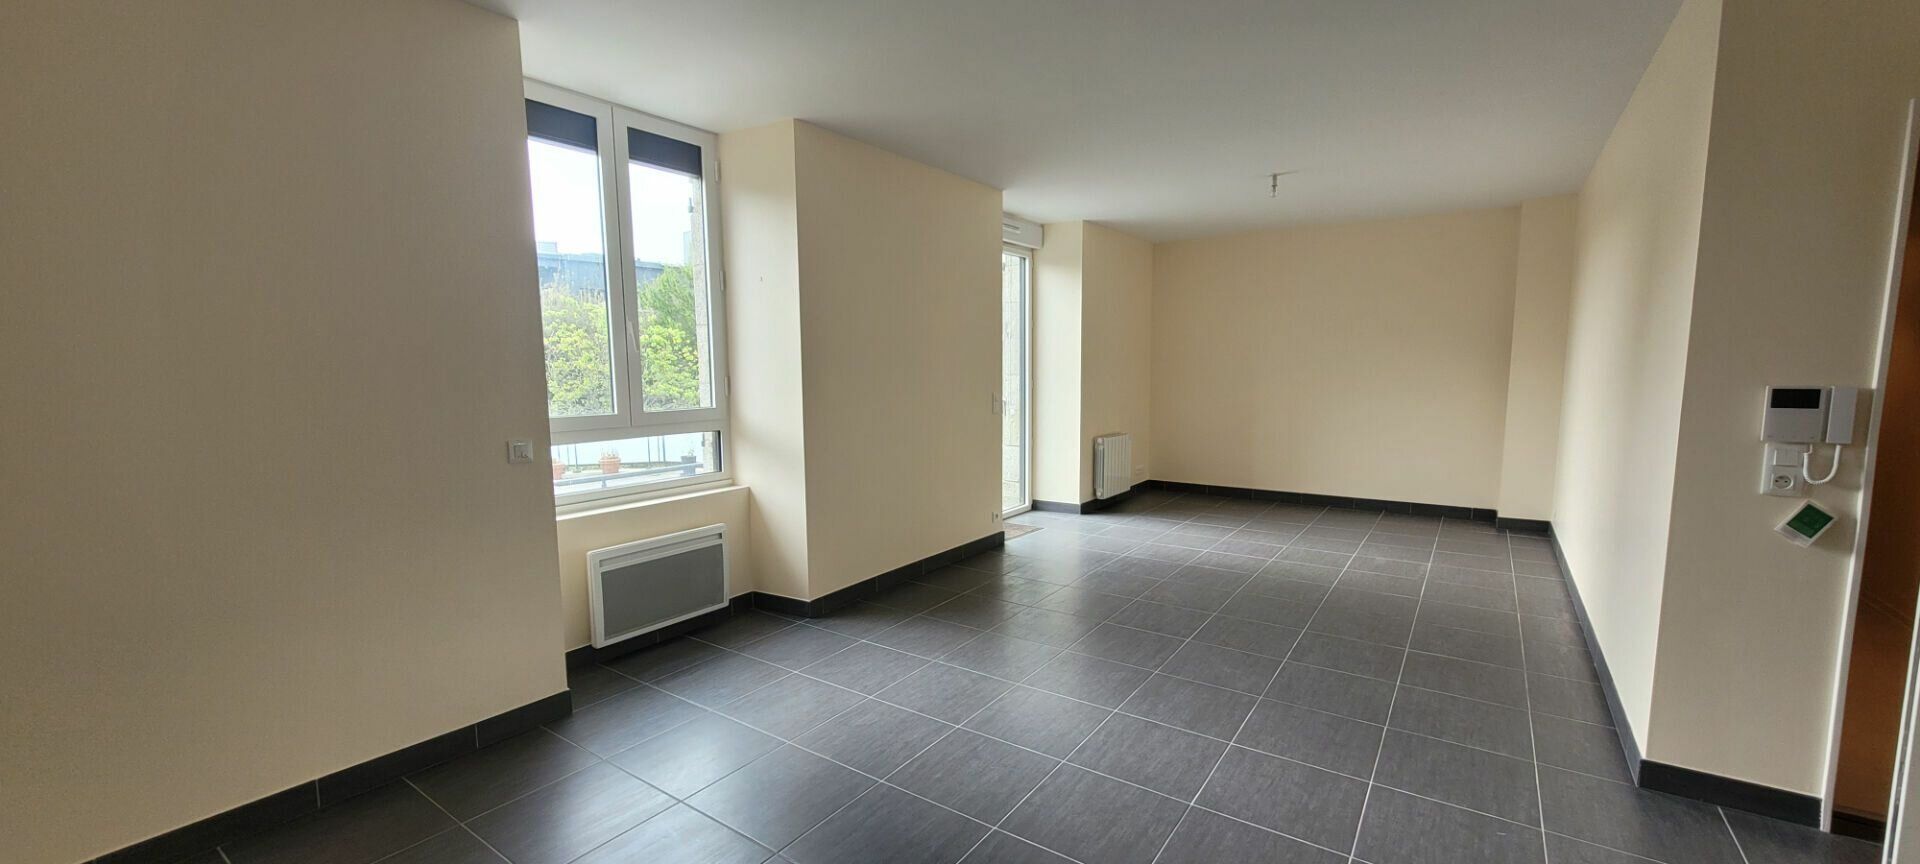 Appartement à vendre 3 103m2 à Saint-Brieuc vignette-2